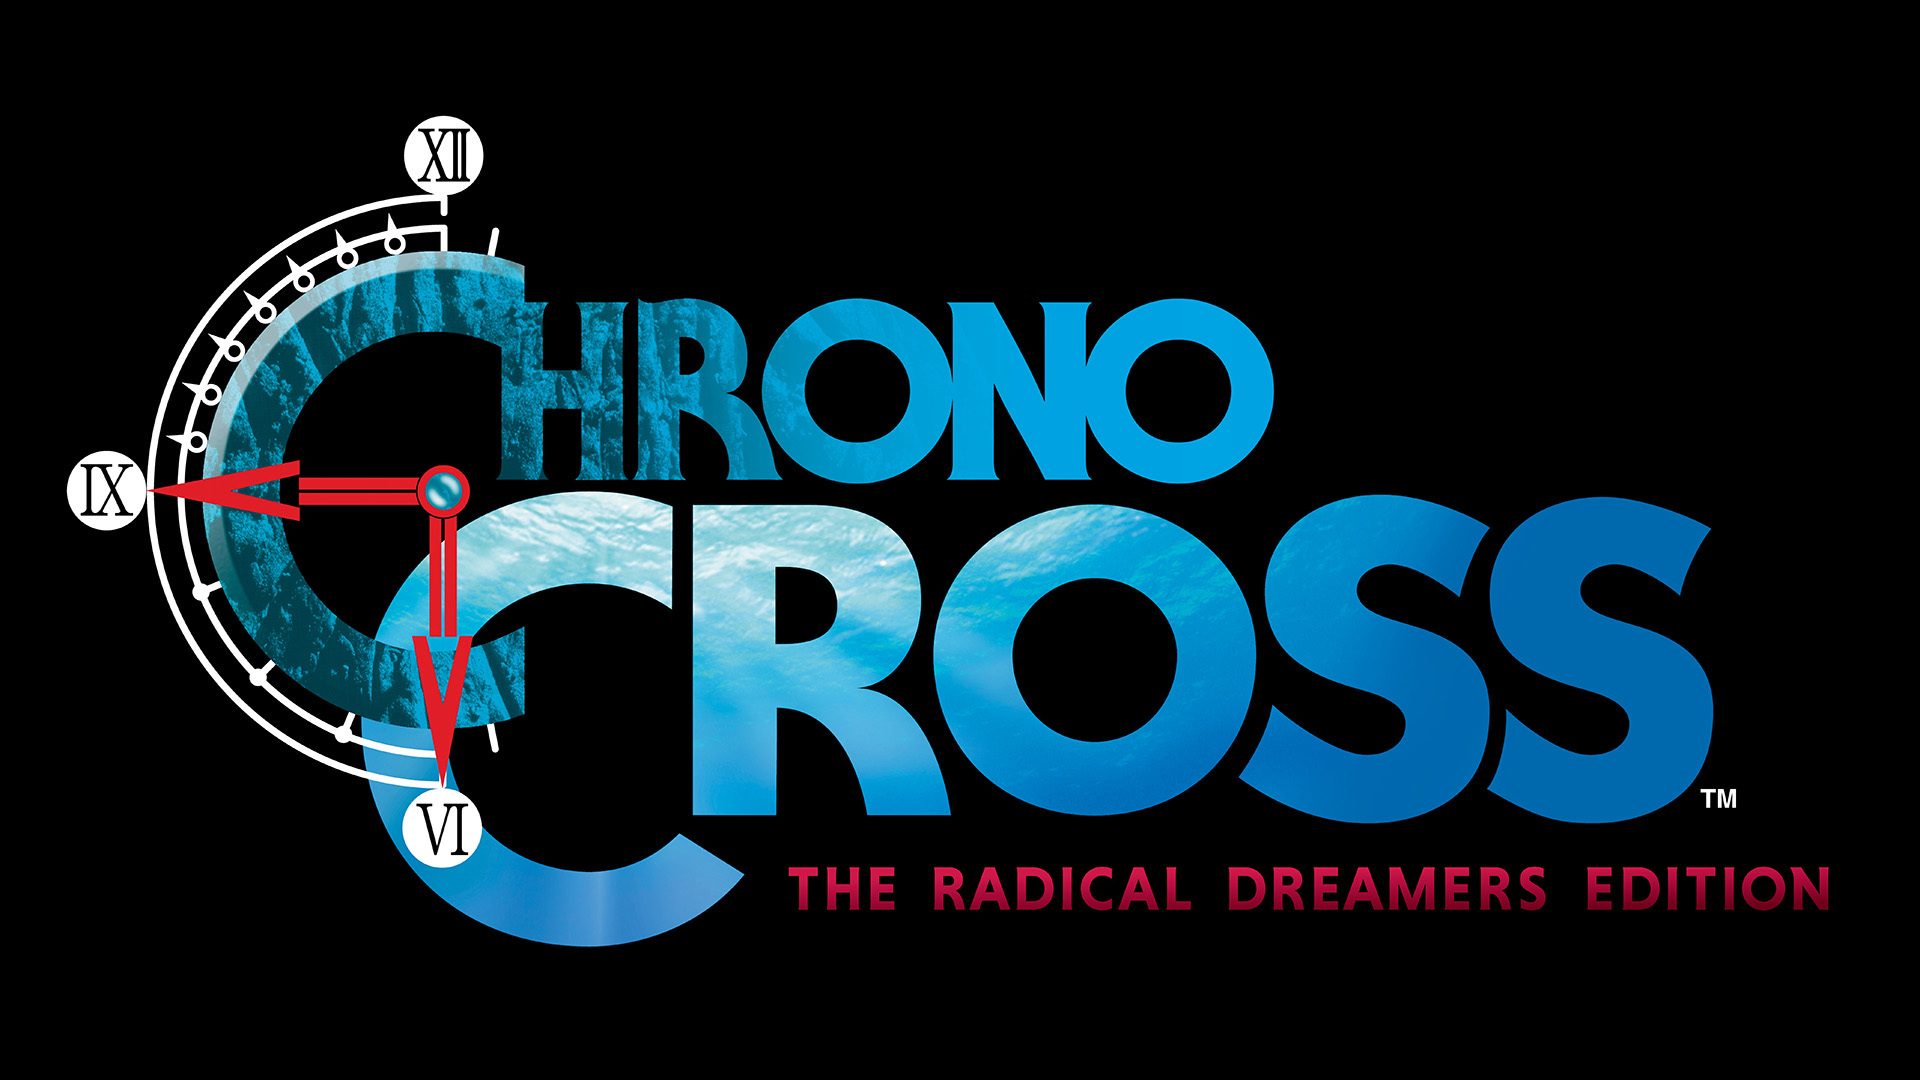 Chrono Cross the Radical Dreamers #Final - Todos os personagens 